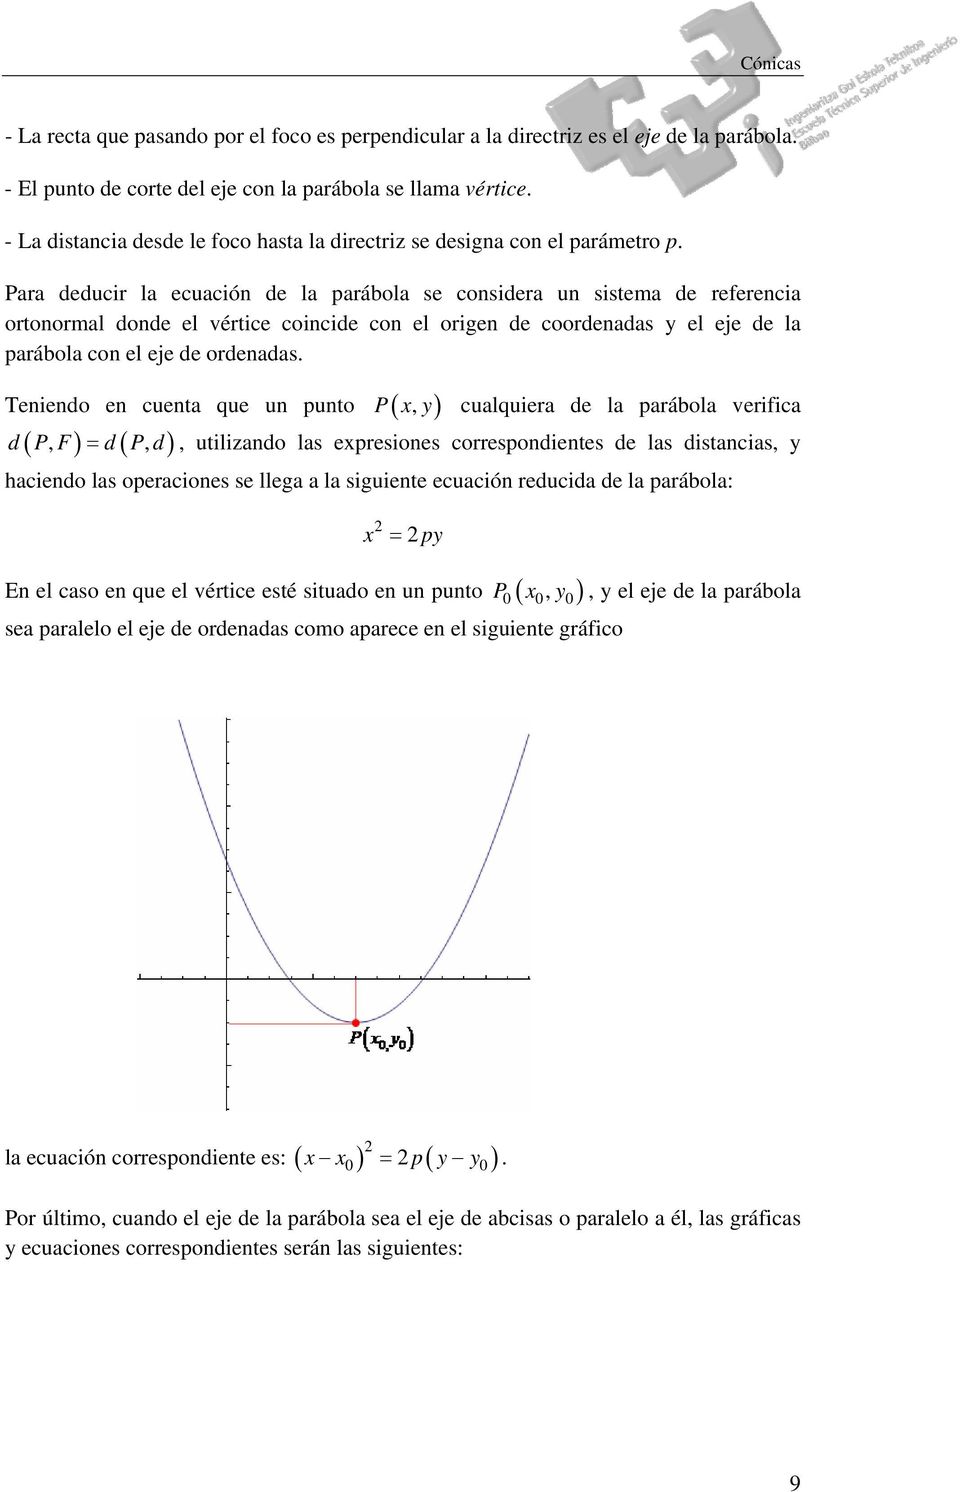 Para deducir la ecuación de la parábola se considera un sistema de referencia ortonormal donde el vértice coincide con el origen de coordenadas y el eje de la parábola con el eje de ordenadas.